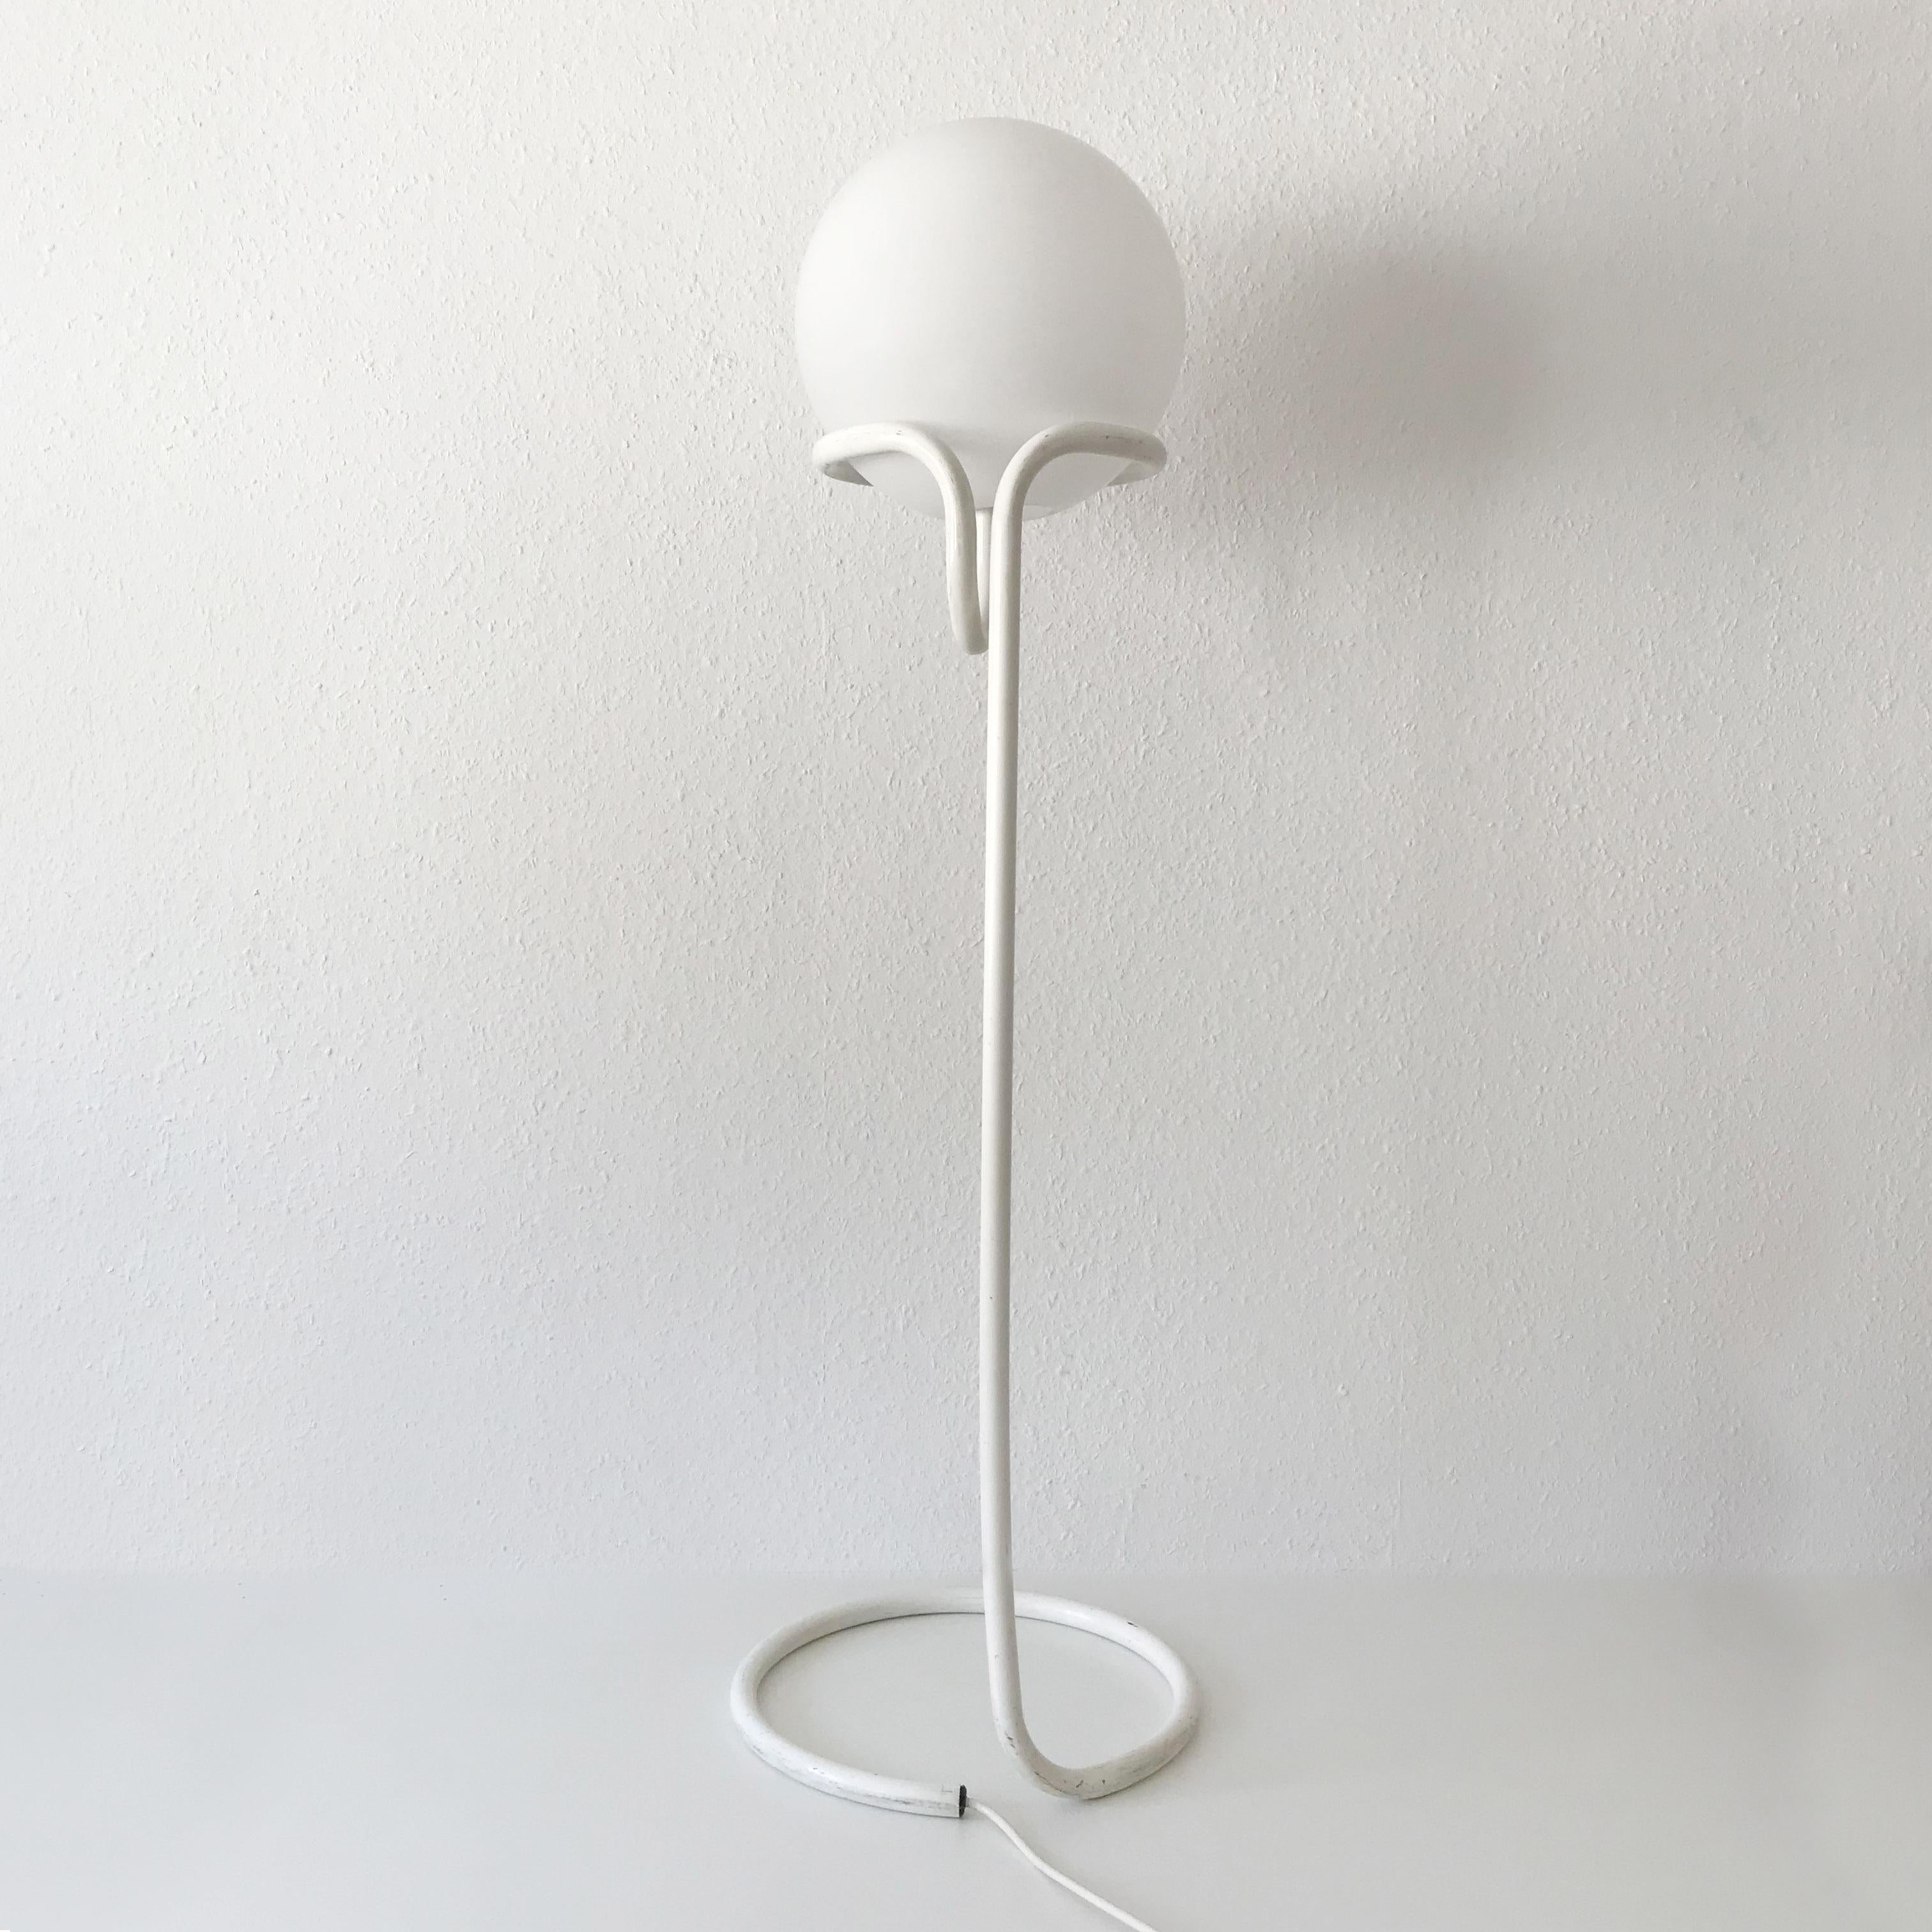 Floor Lamp Globe by Aldo Van Den Nieuwelaar for Domani Designs Amsterdam 1967 For Sale 2